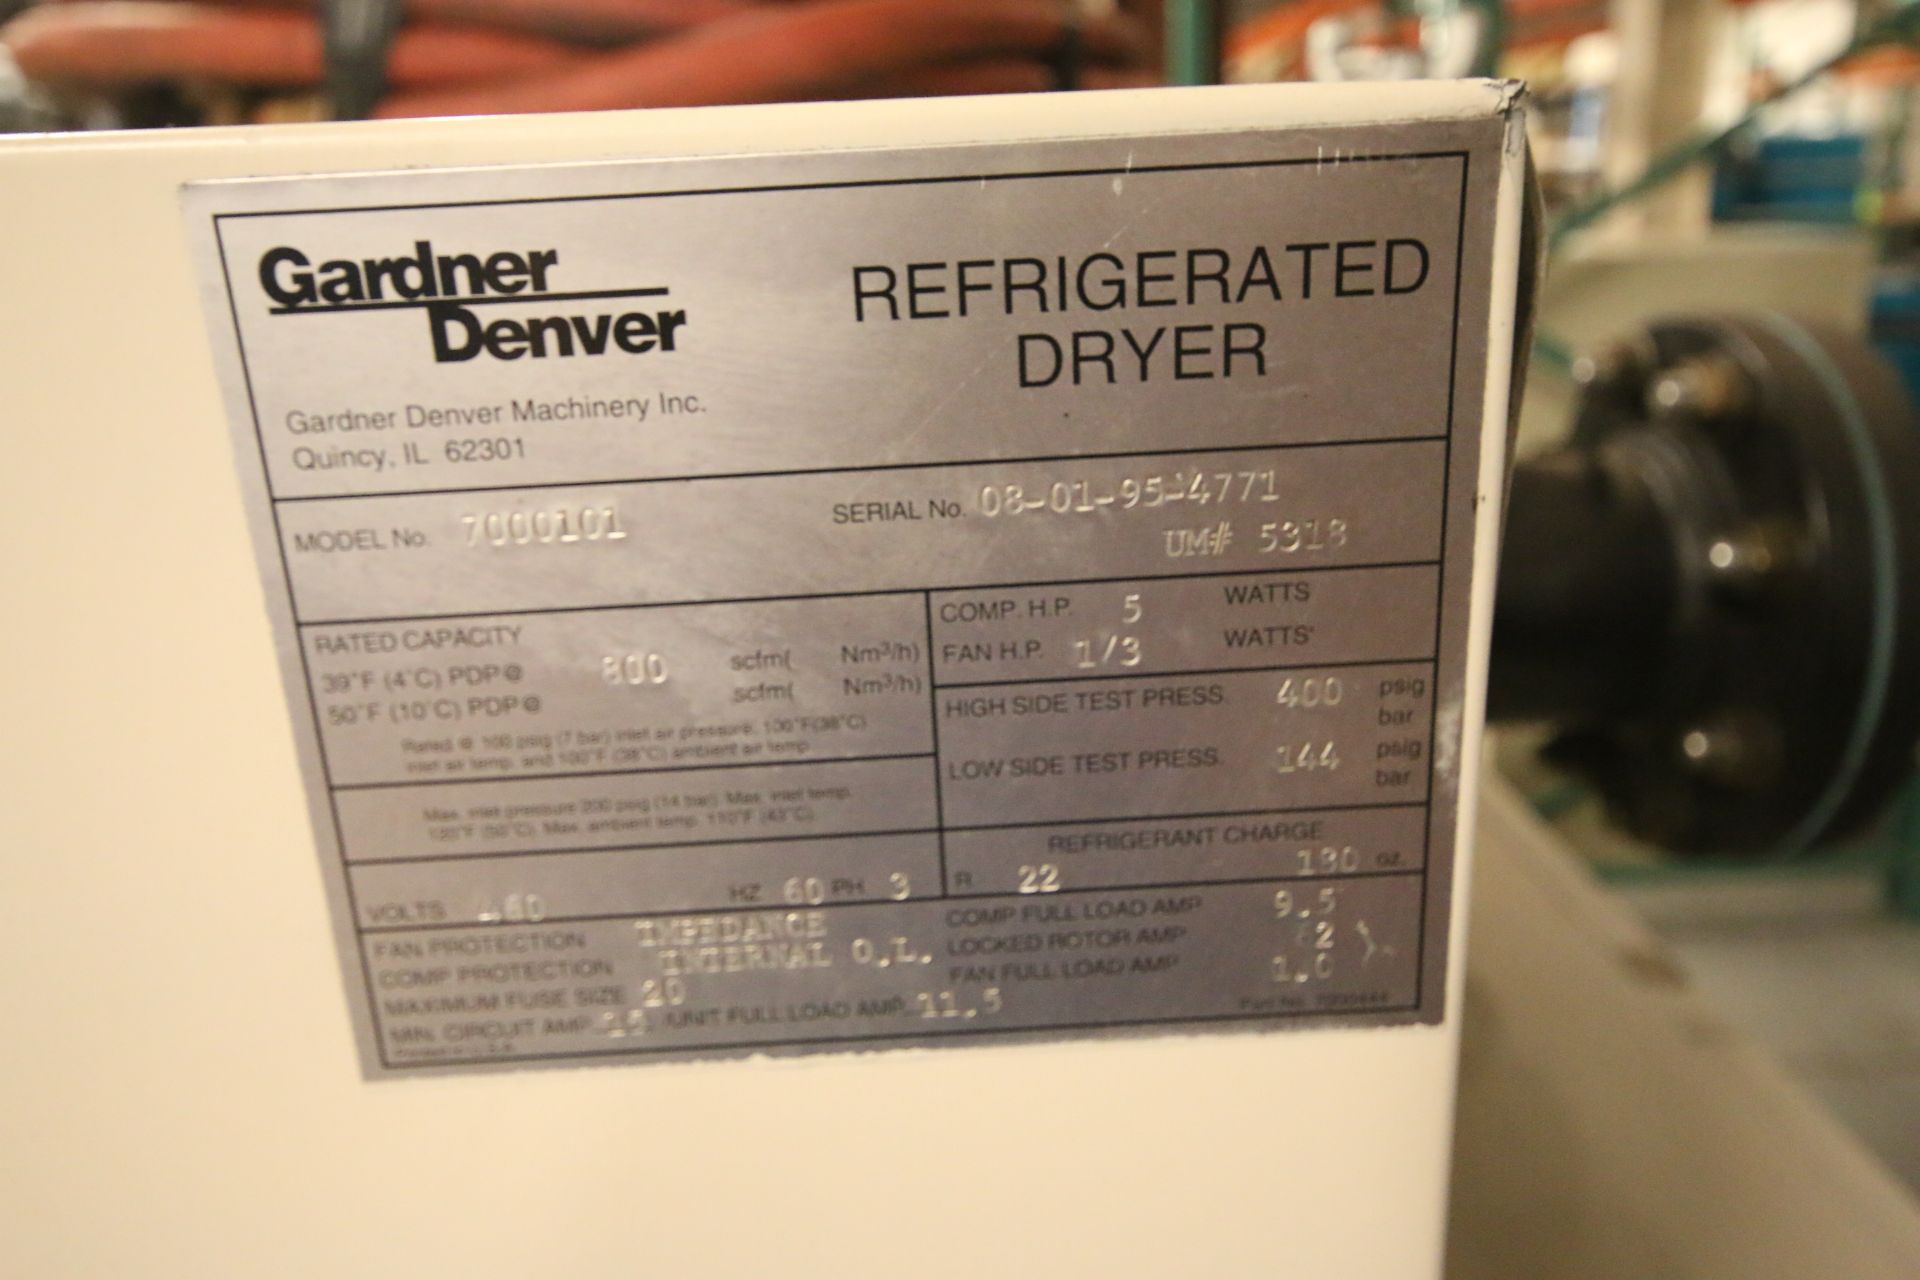 Gardner Denver Refrigerated Air Dryer, Model 7000101, S/N 8-01-95-4771, 800 scfm, 5 hp Comp., 1/3 hp - Image 5 of 5